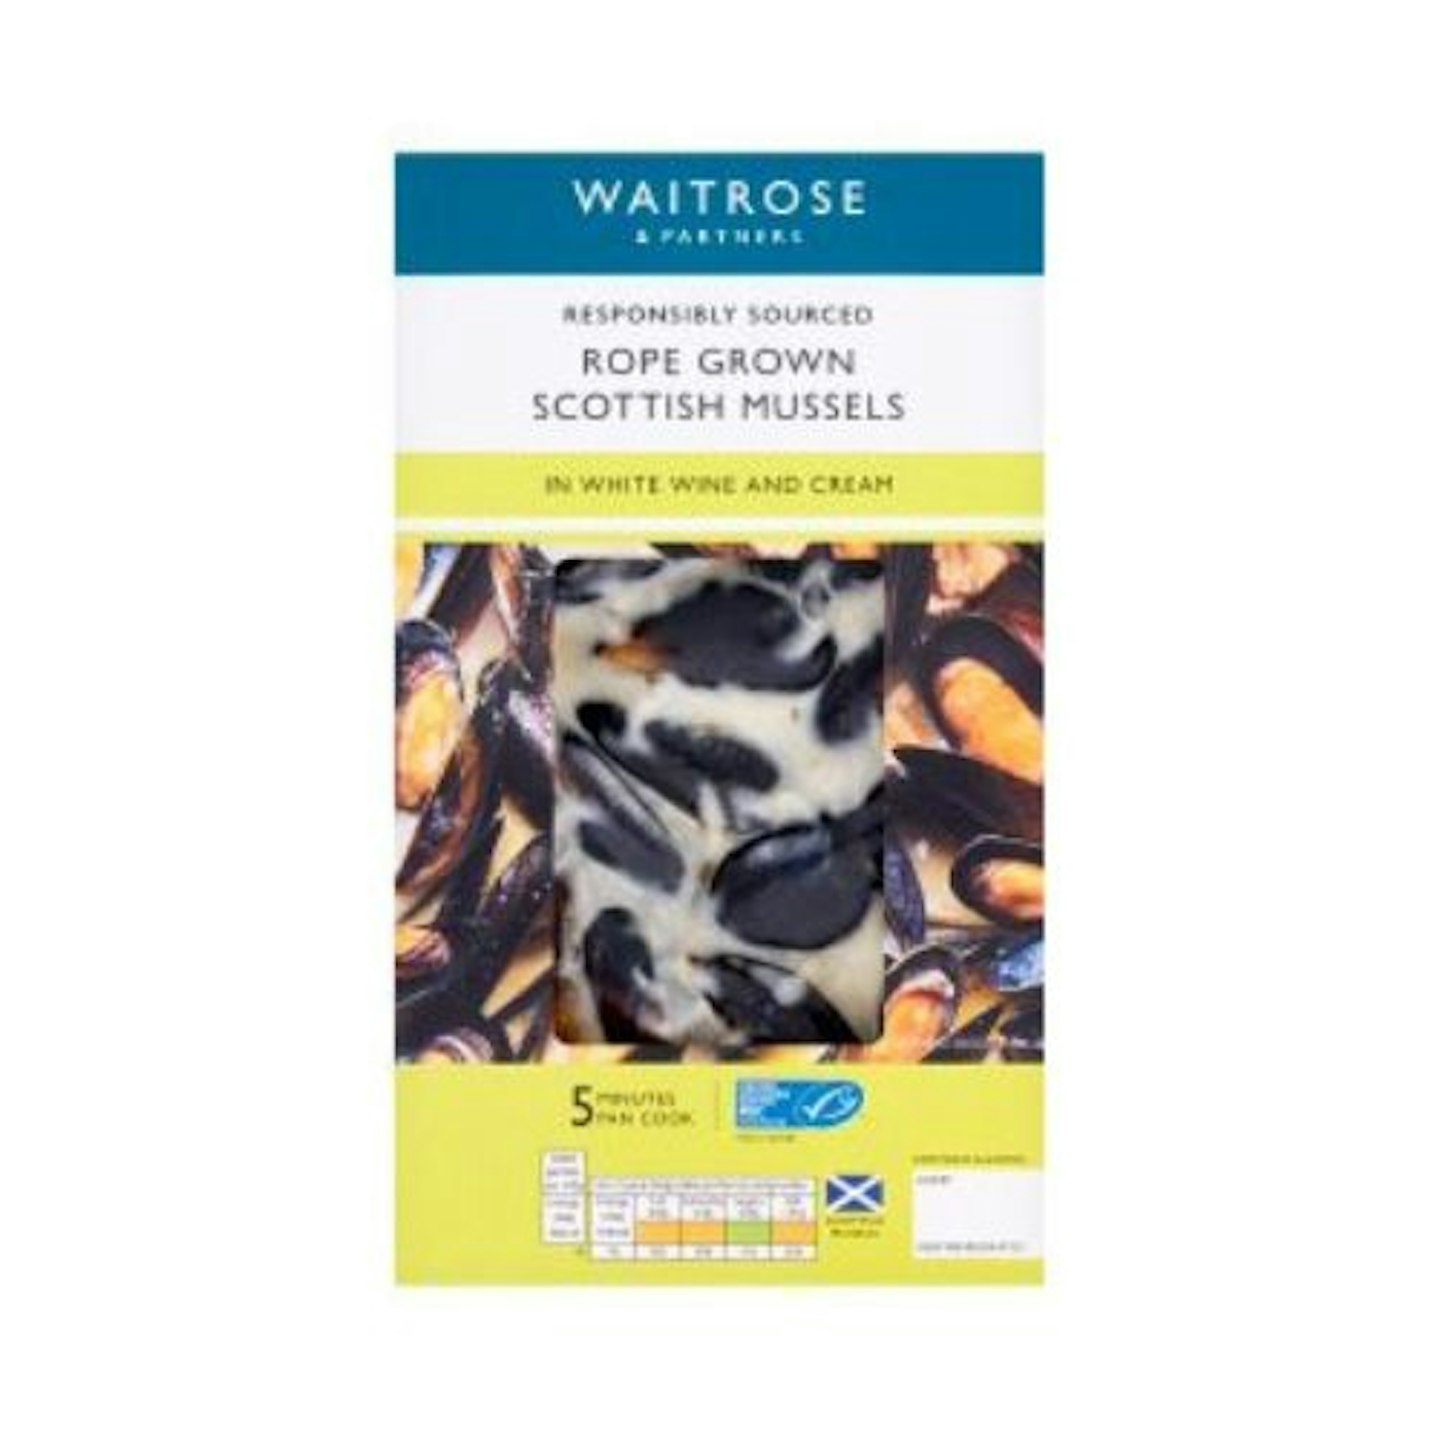 Waitrose Scottish Mussels in White Wine and Cream